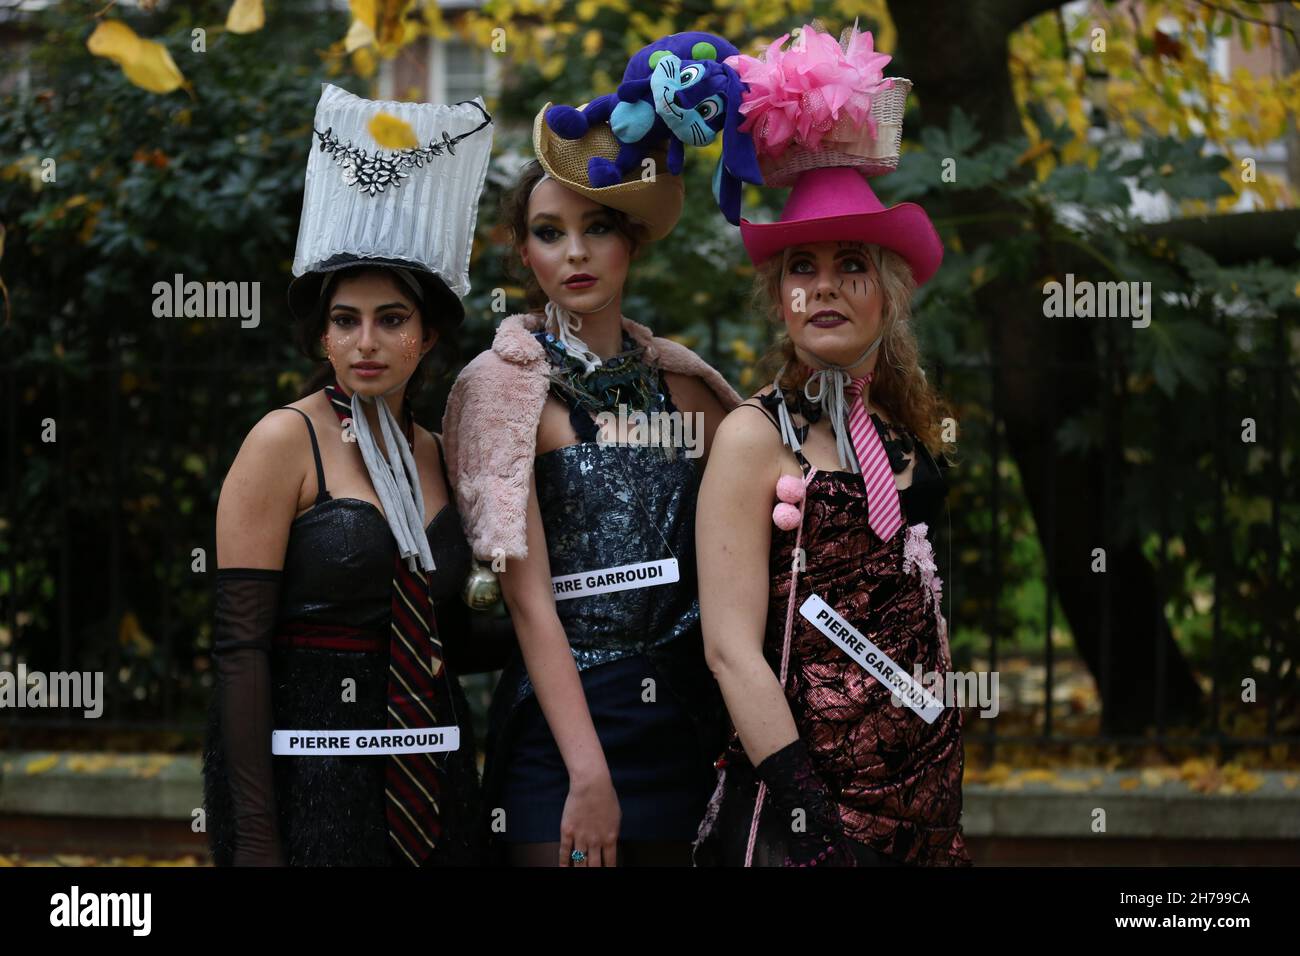 Los modelos muestran la colección de Pierre Garroudi durante el espectáculo de moda flash mob del diseñador en Londres, Reino Unido Foto de stock